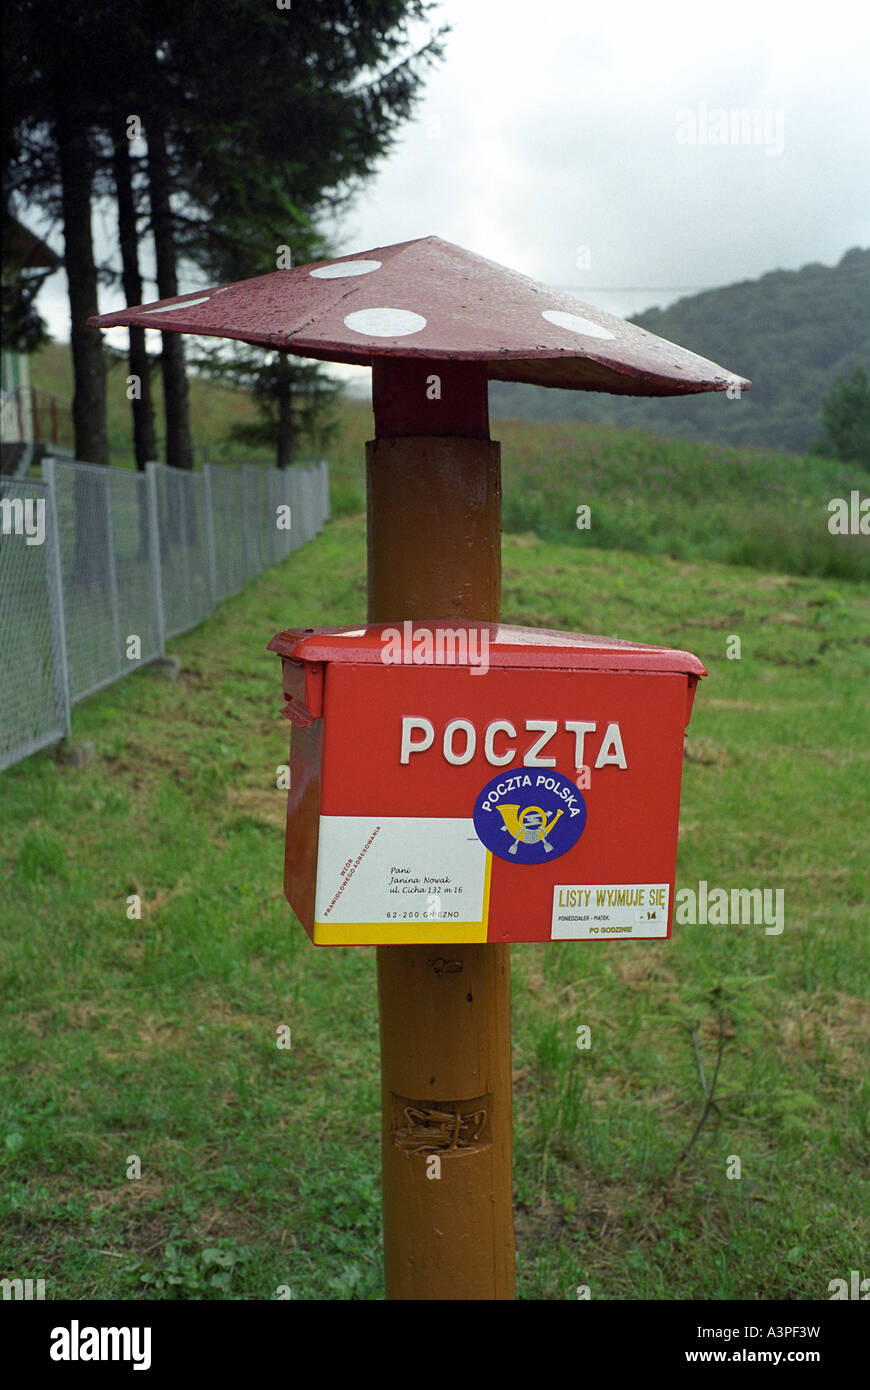 A red mailbox, Ustrzyki Gorne, Poland Stock Photo